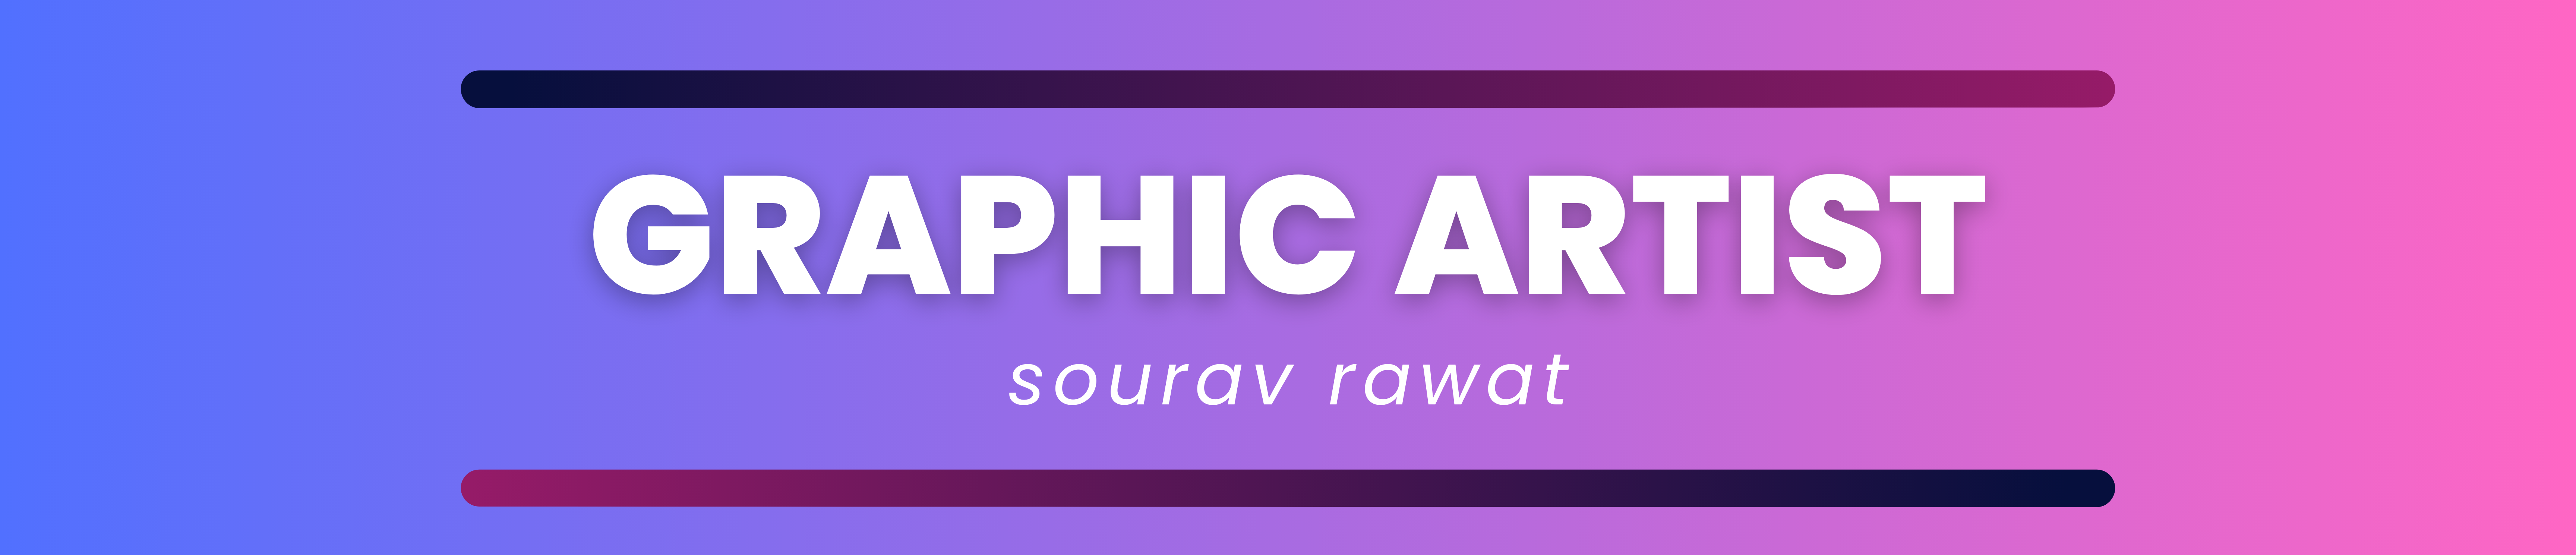 Profil-Banner von Sourav Rawat